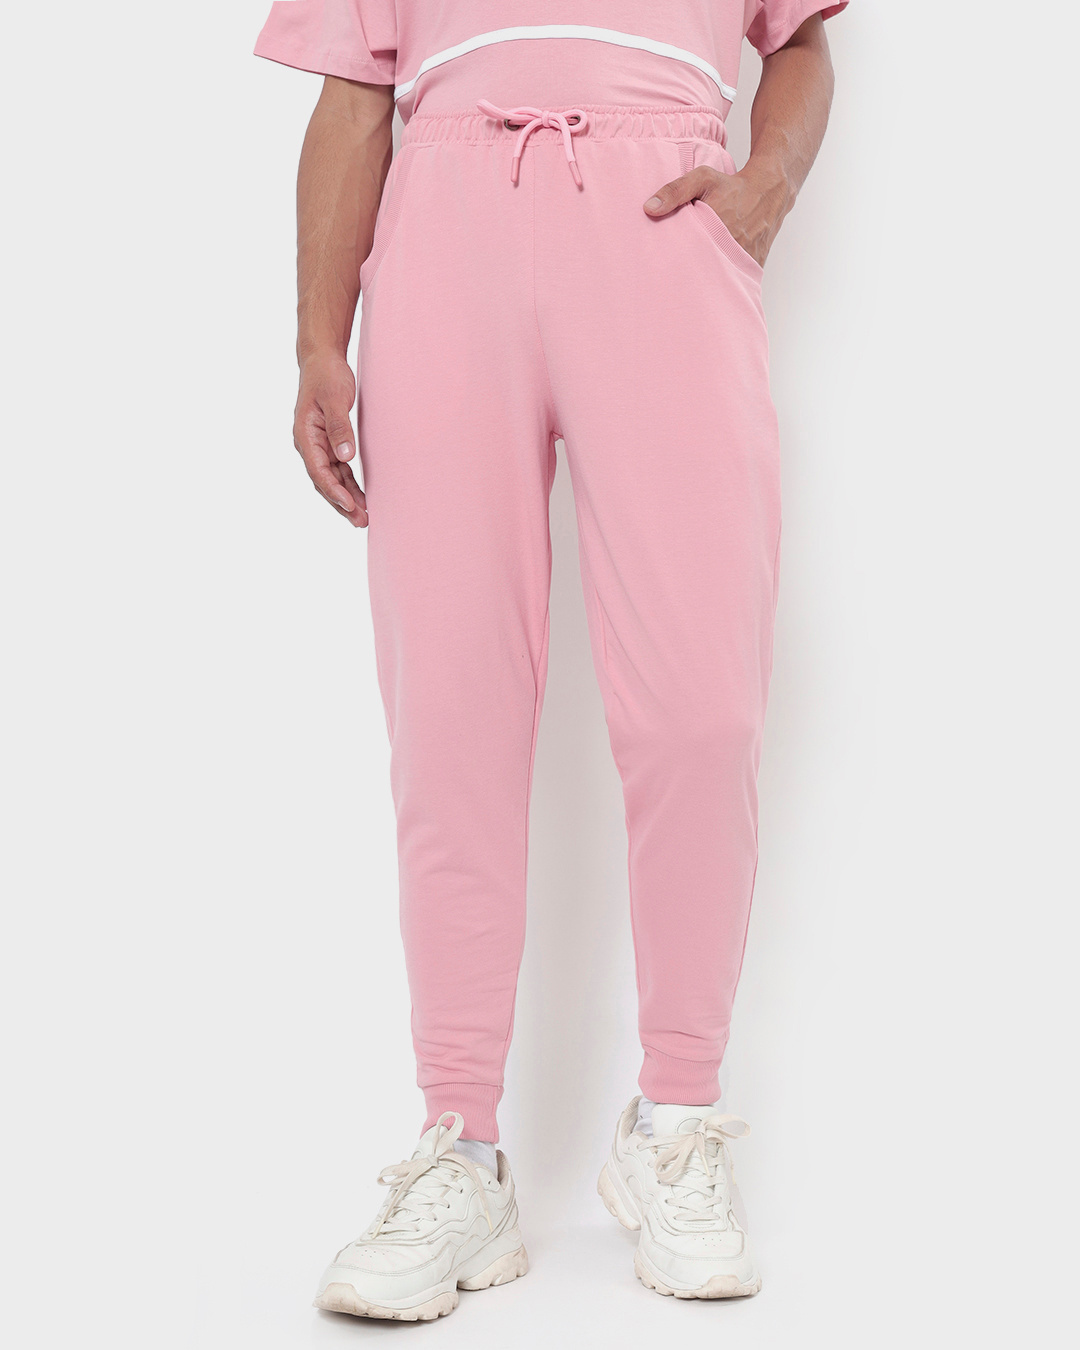 Buy Men's Cheeky Pink Joggers for Men Online at Bewakoof